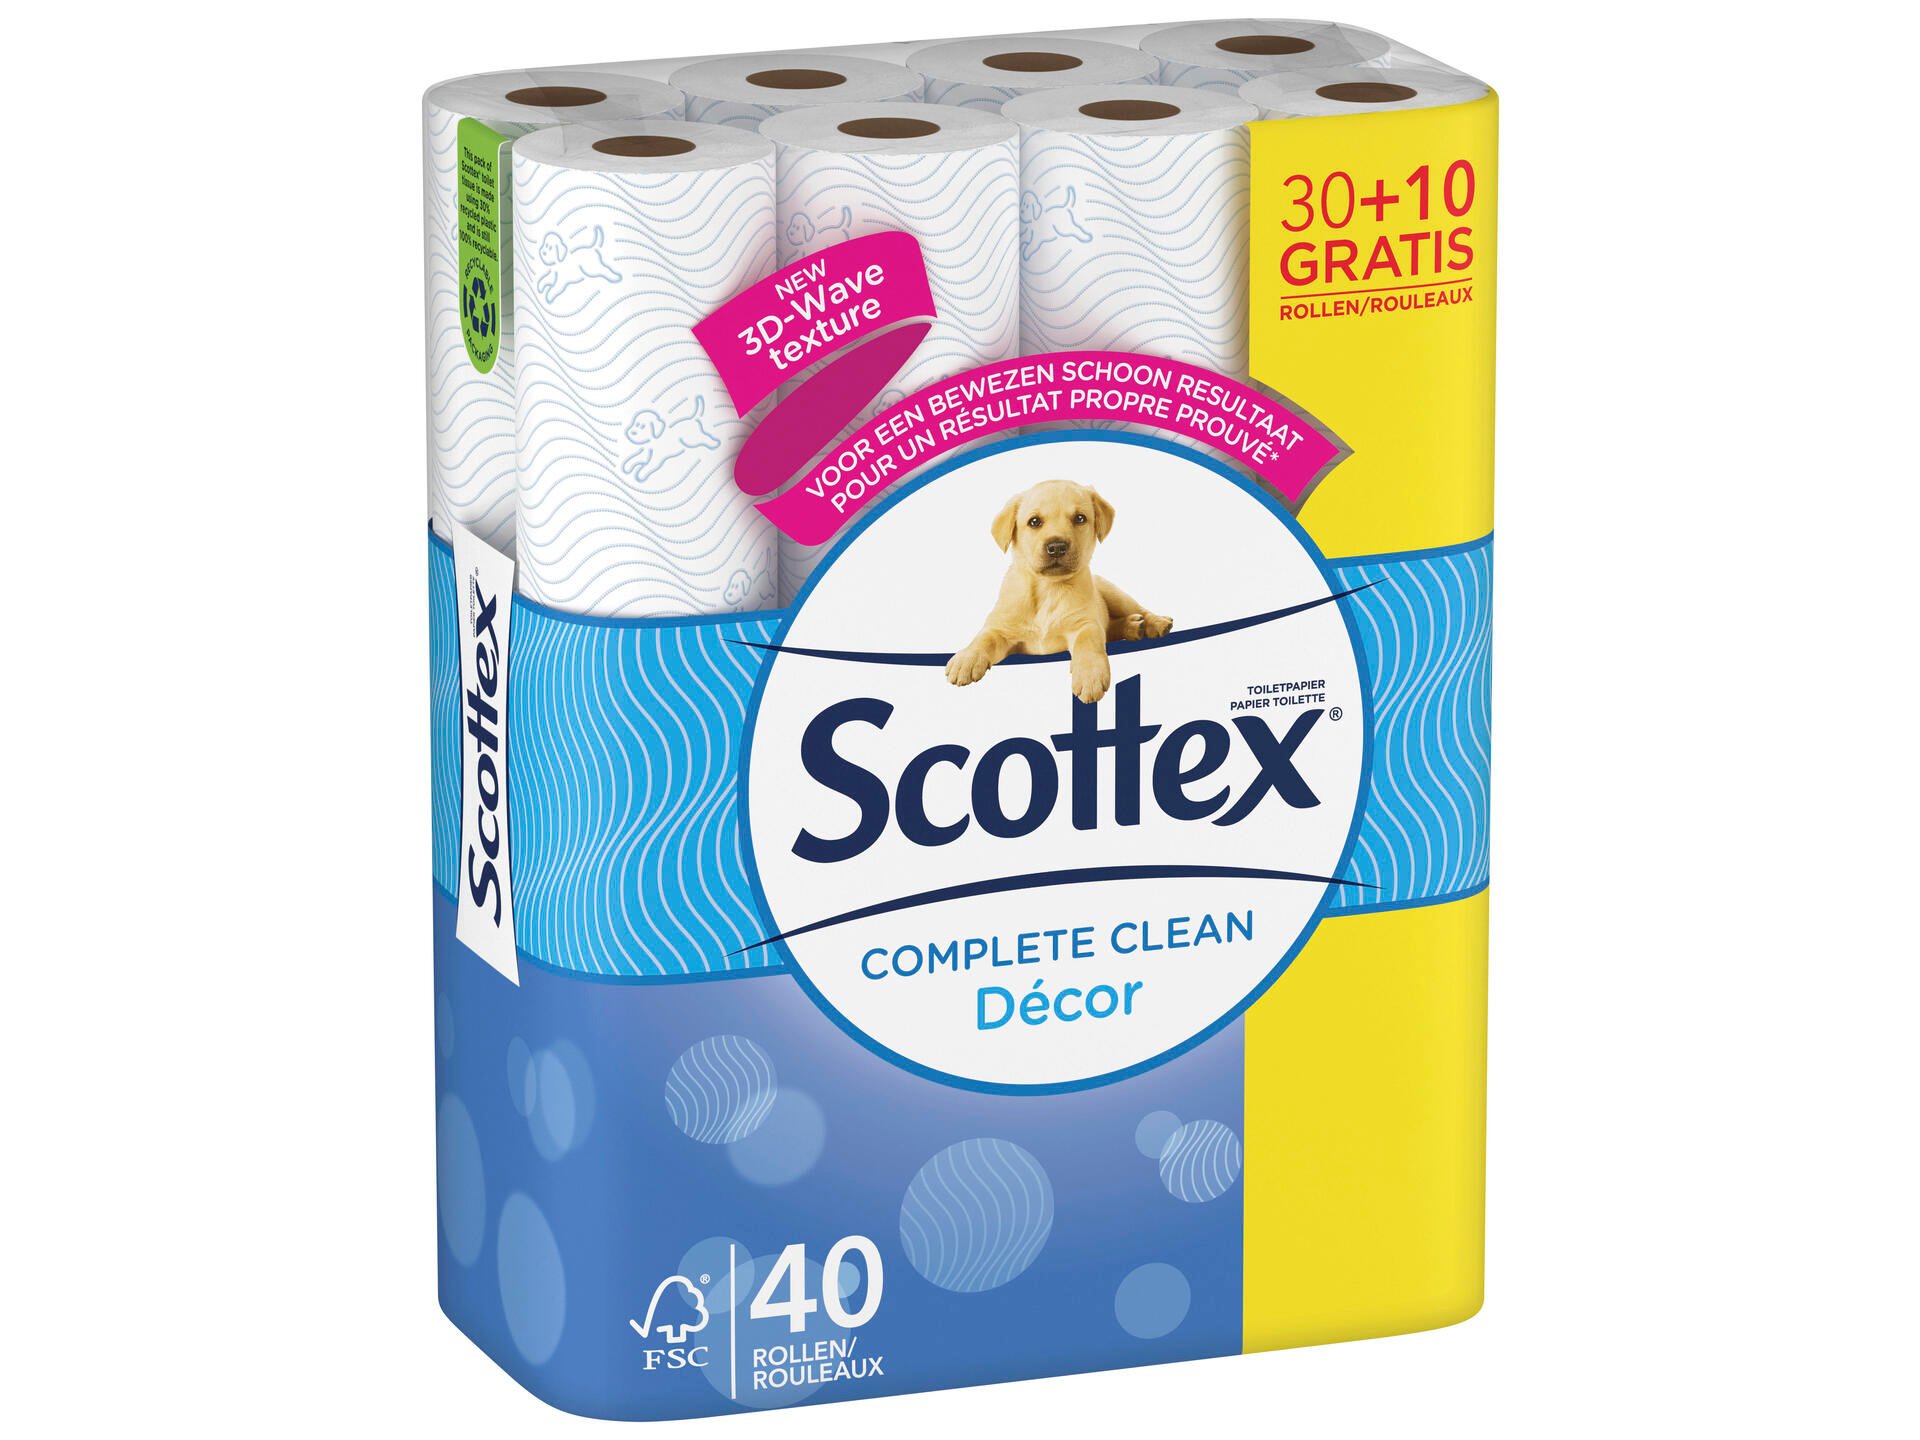 Scottex Complete Clean Décor WC-papier 30+10 gratis